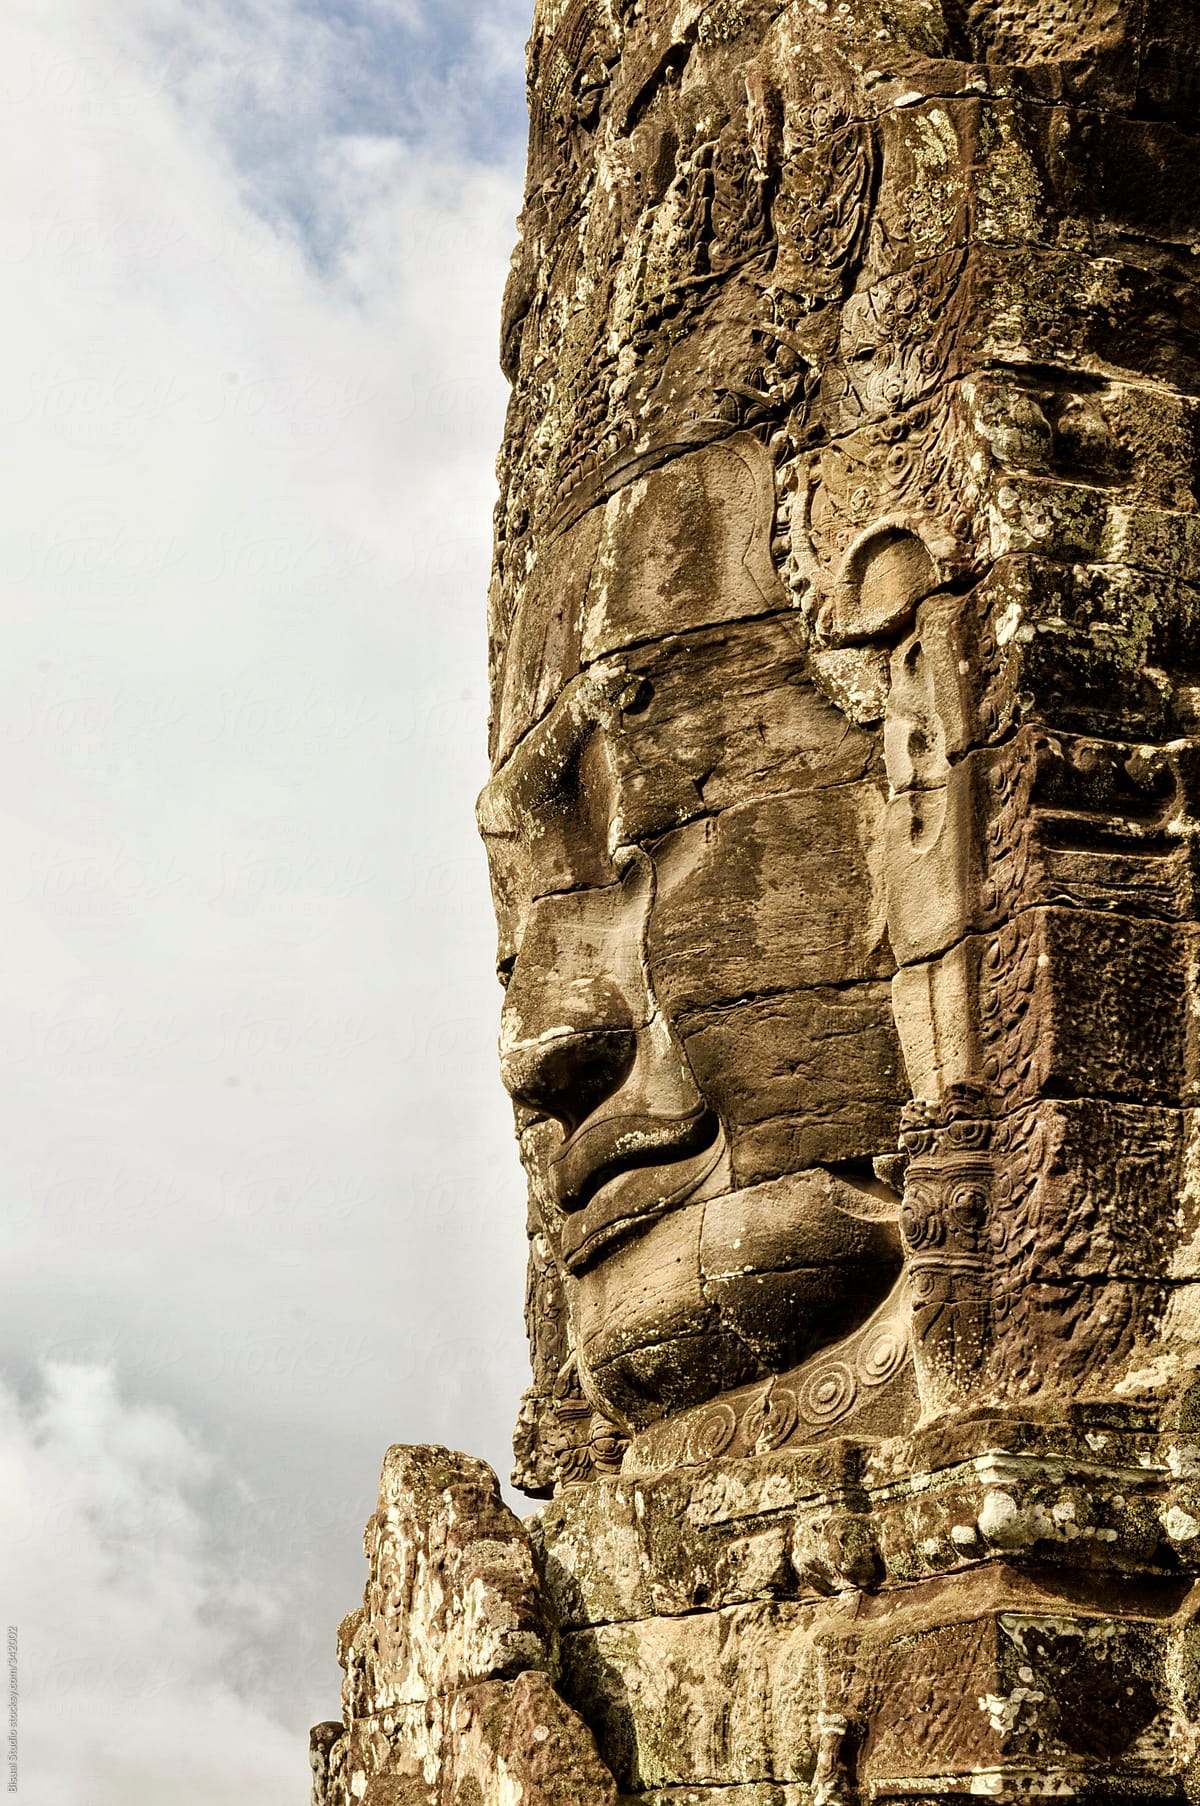 Faces of Bayon in Angkor Thom, Cambodia